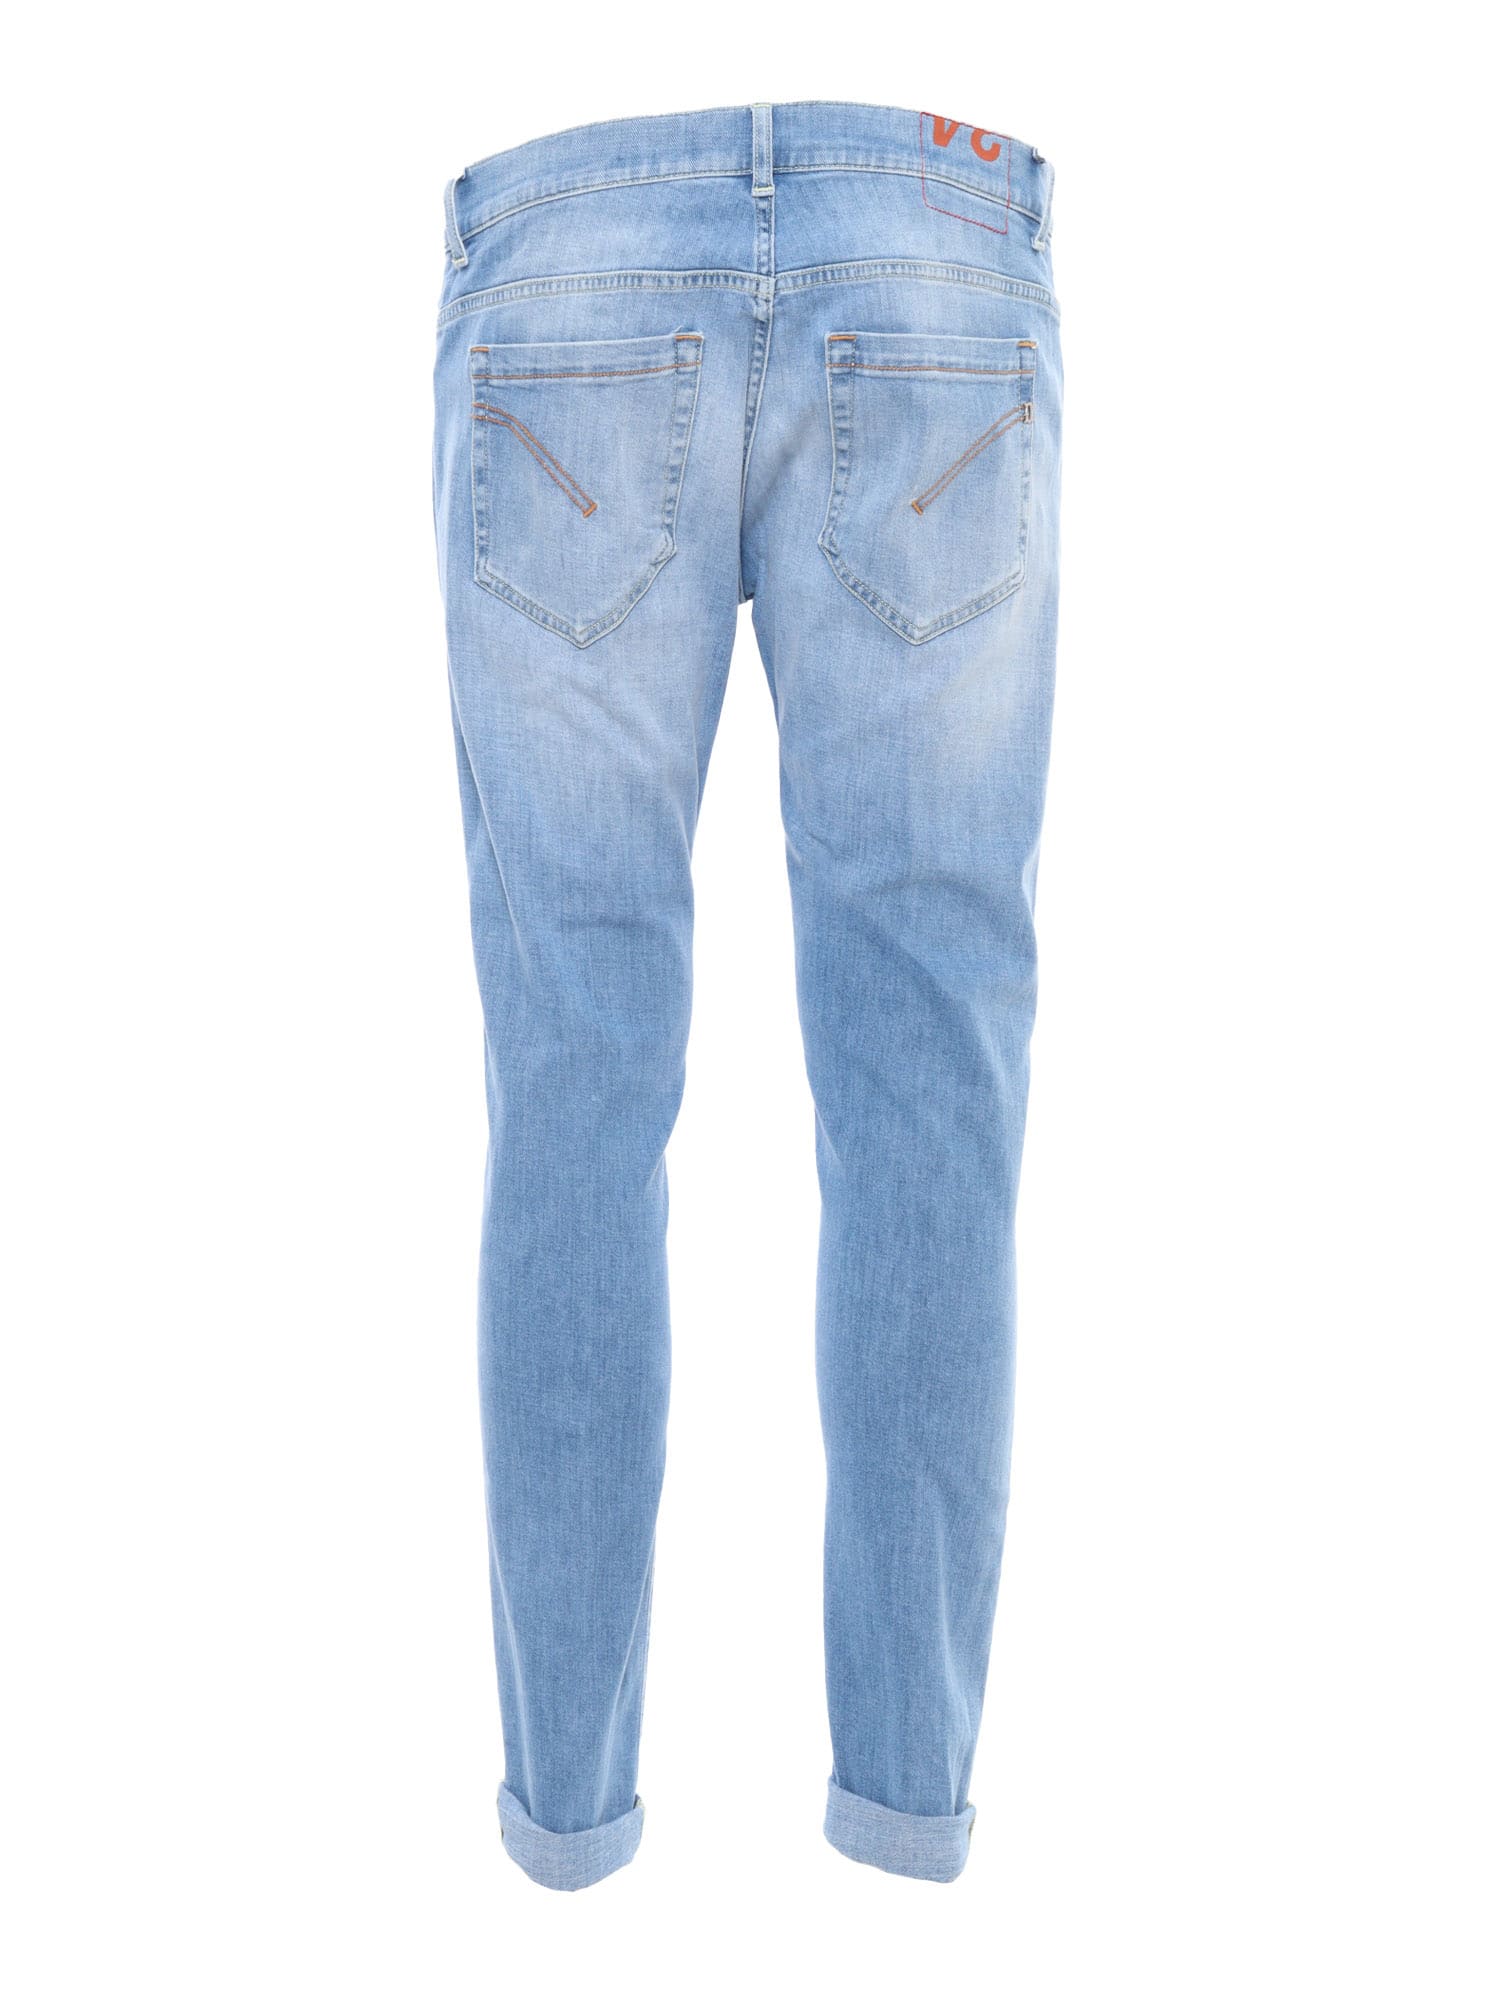 Shop Dondup Washed Effect Light Blue Jeans